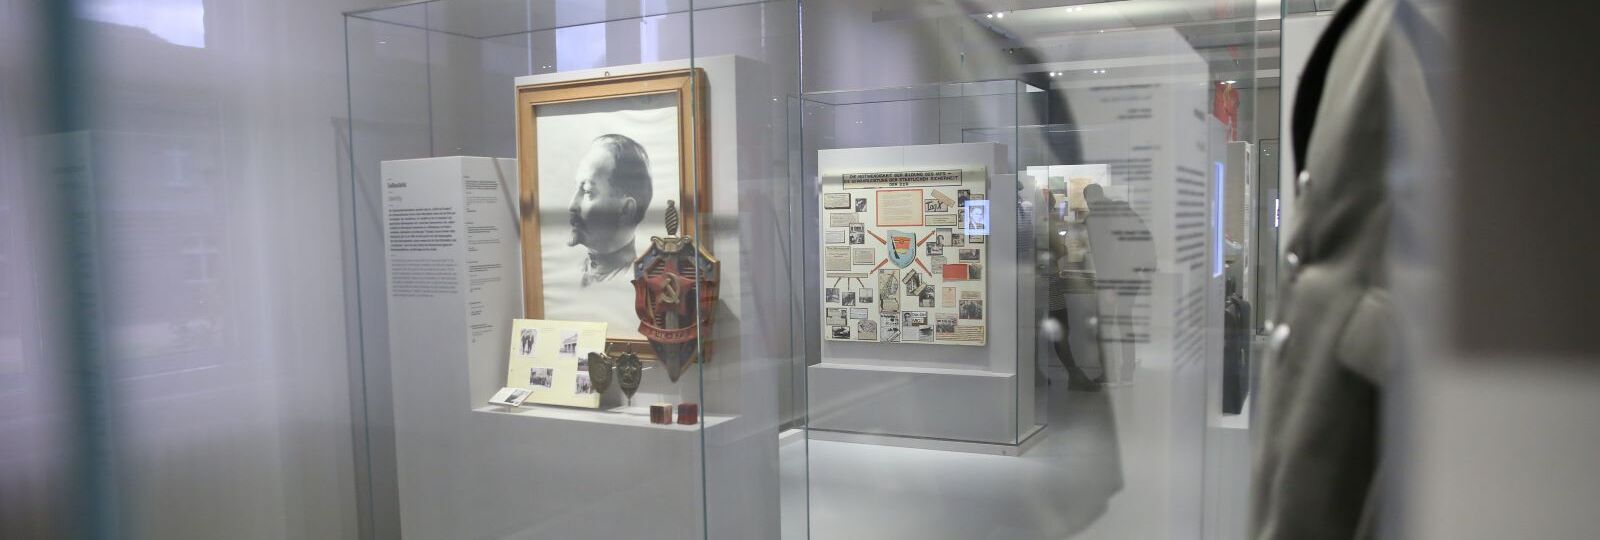 Blick in die Ausstellung "Inhaftiert in Hohenschönhausen"